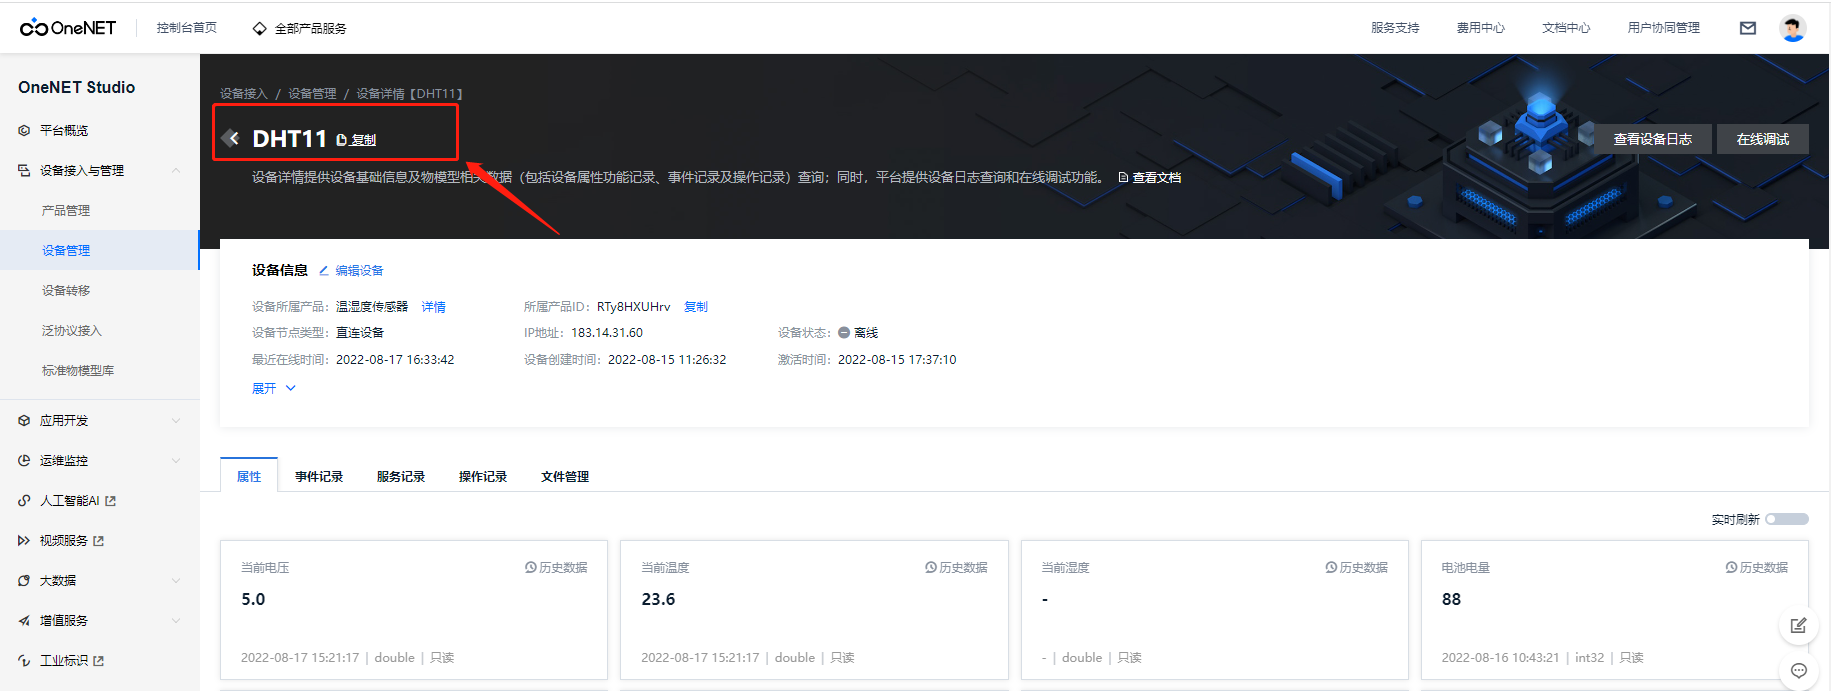 中国移动物联网开放平台OneNET学习笔记（2）——设备接入测试（MQTT协议）OneNET Studio篇